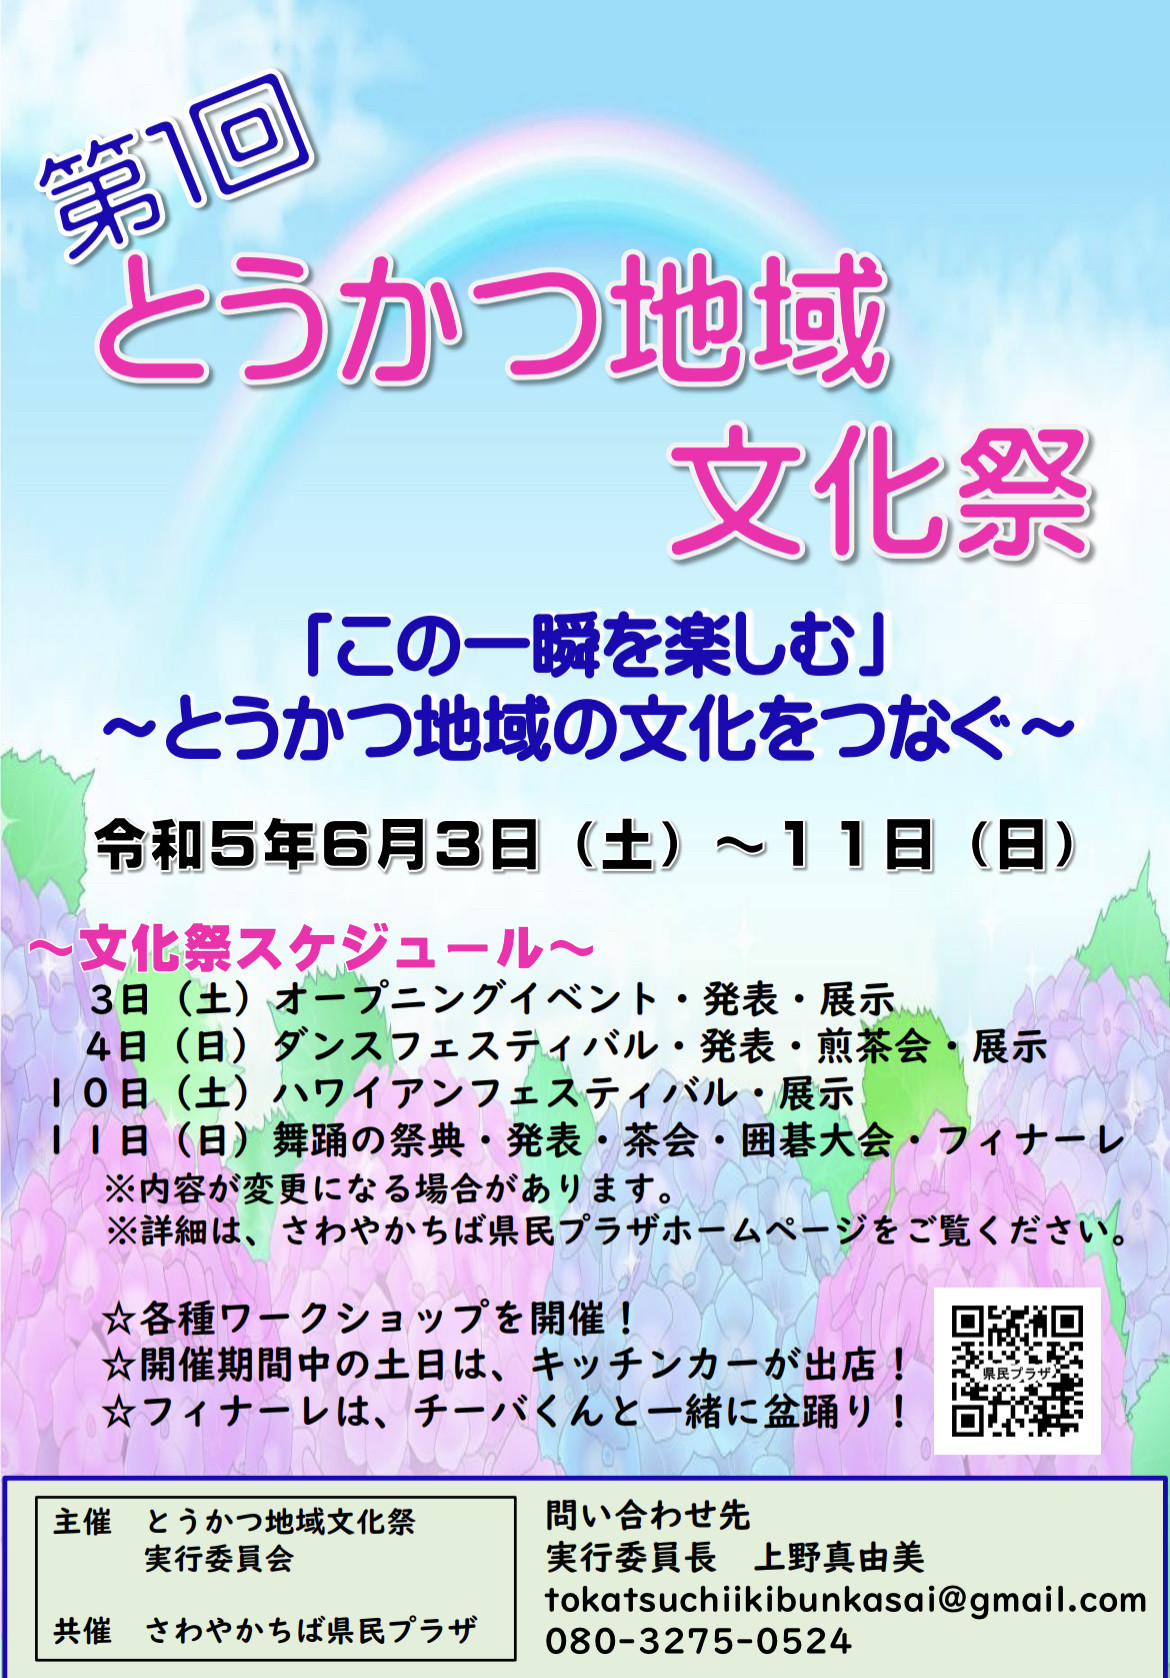 6/10（土）とうかつ地域文化祭@さわやか千葉県民プラザに出演します！